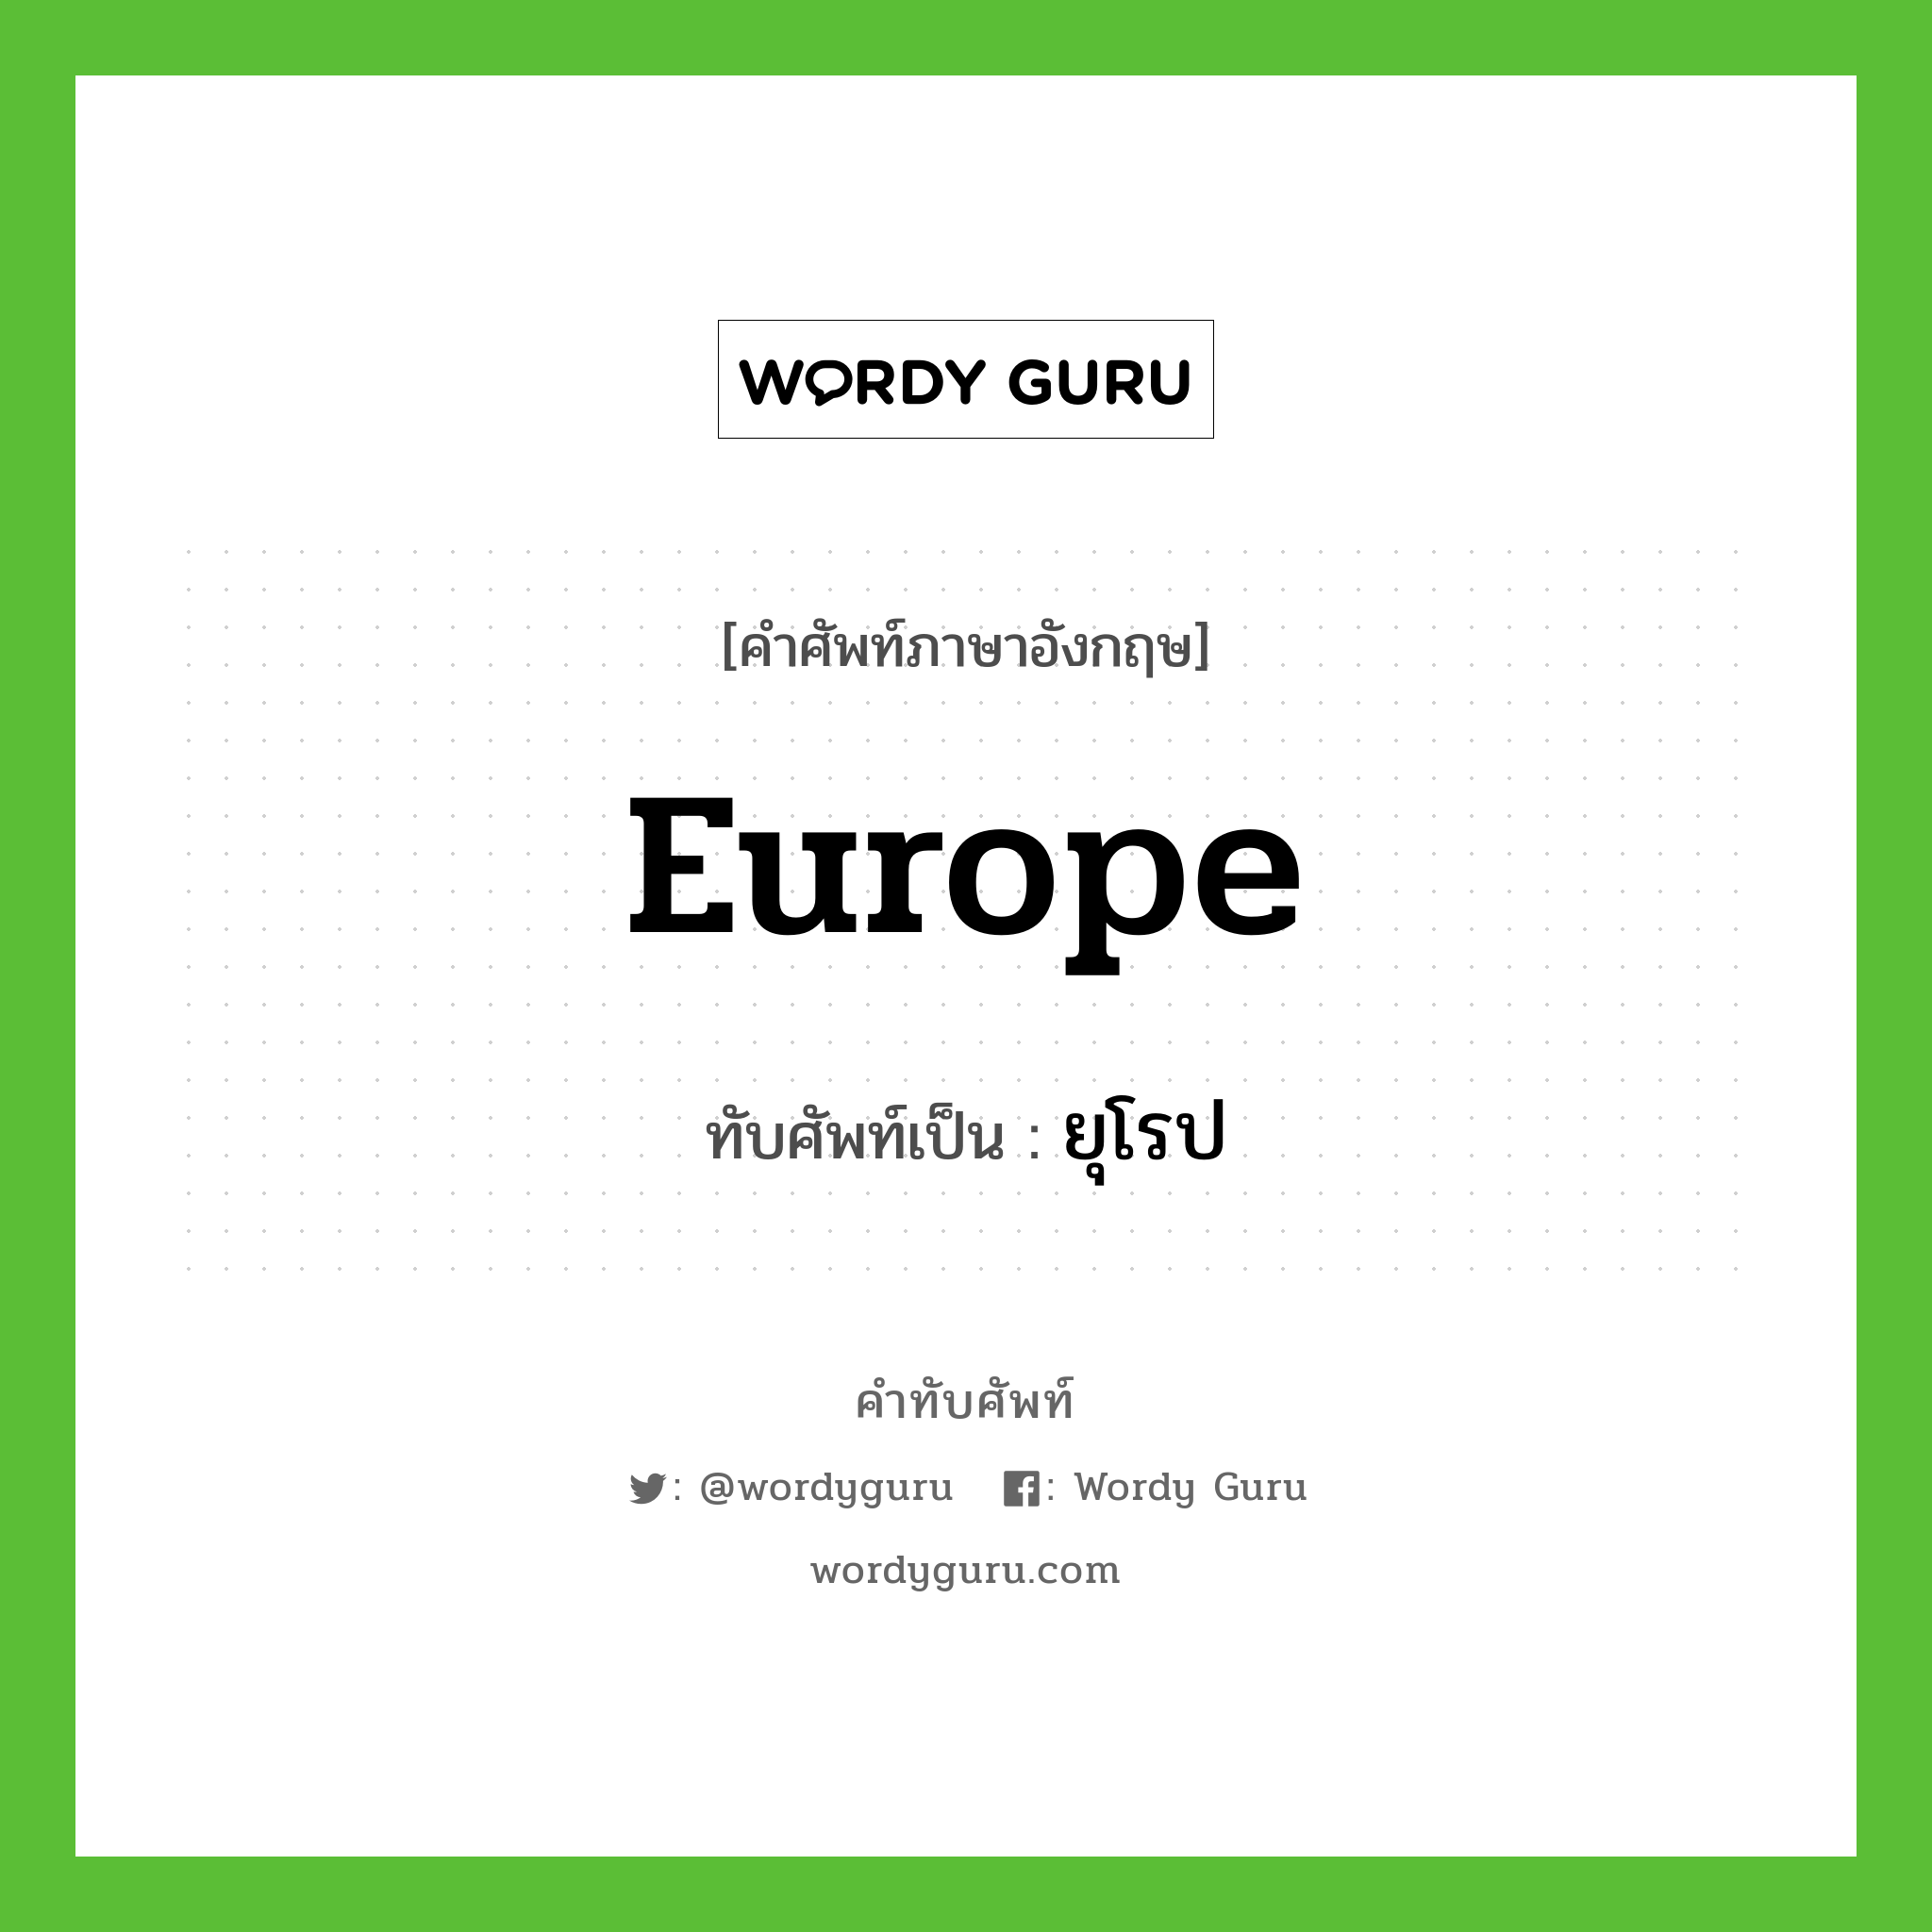 Europe เขียนเป็นคำไทยว่าอะไร?, คำศัพท์ภาษาอังกฤษ Europe ทับศัพท์เป็น ยุโรป